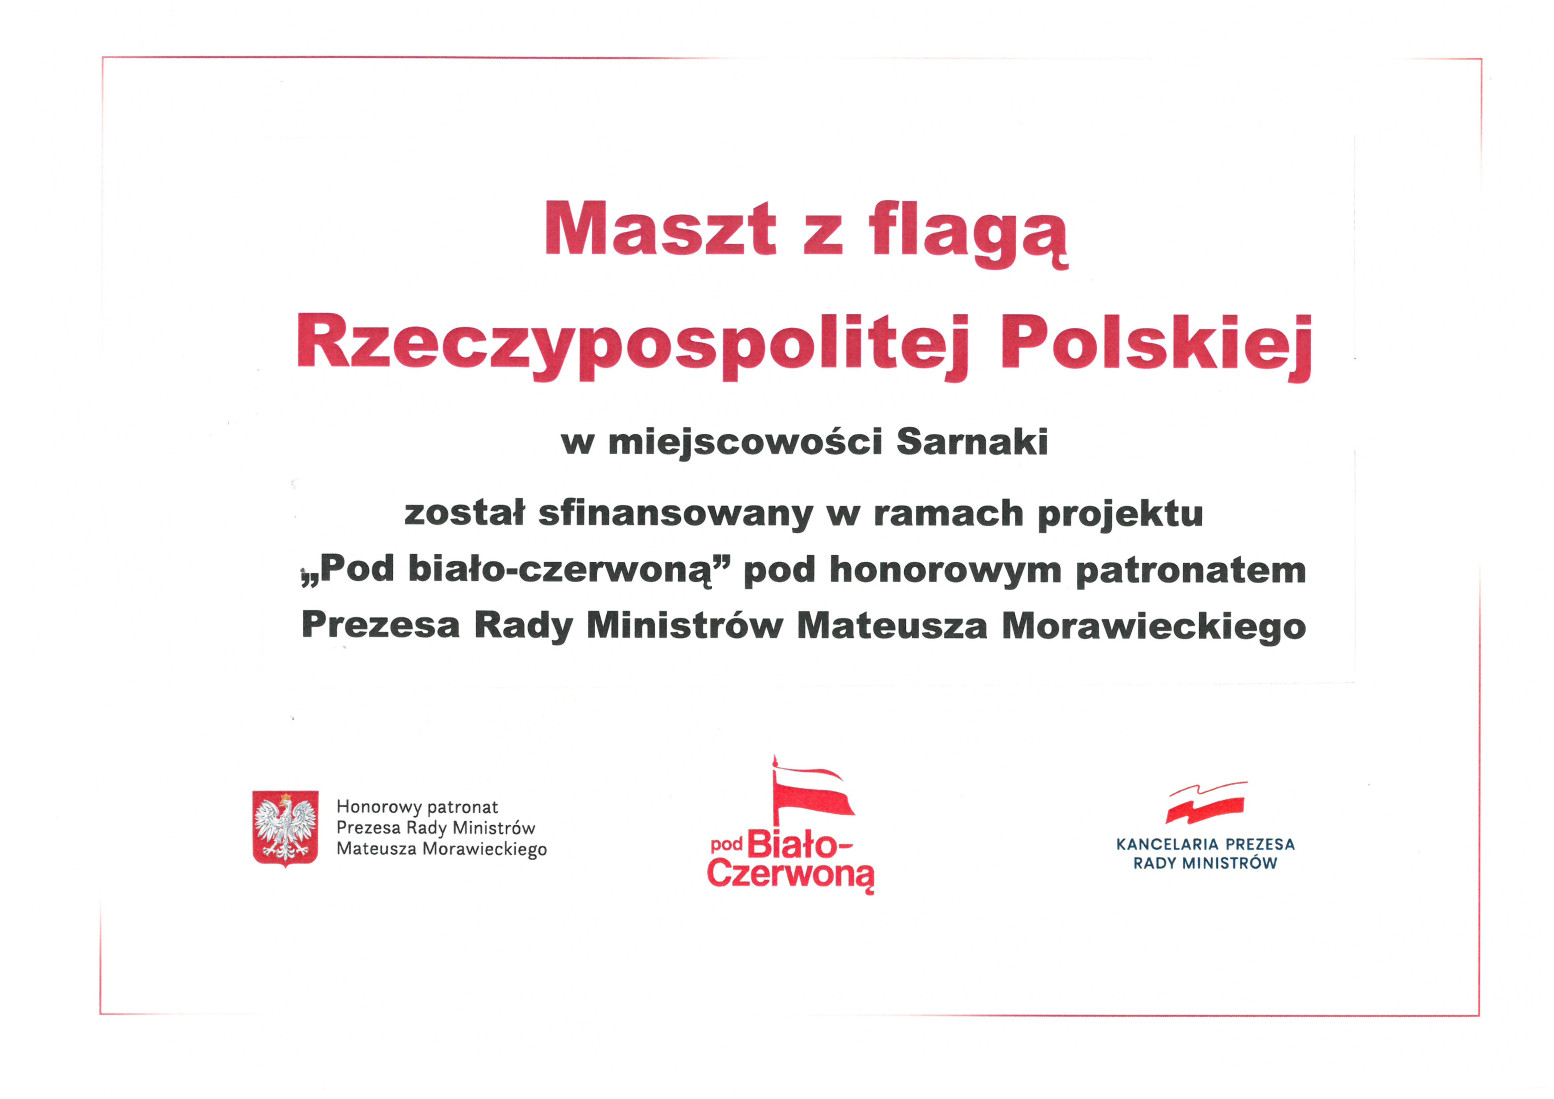 grafika przedstawiająca projekt Maszt z flagą Rzeczypospolitej Polskiej